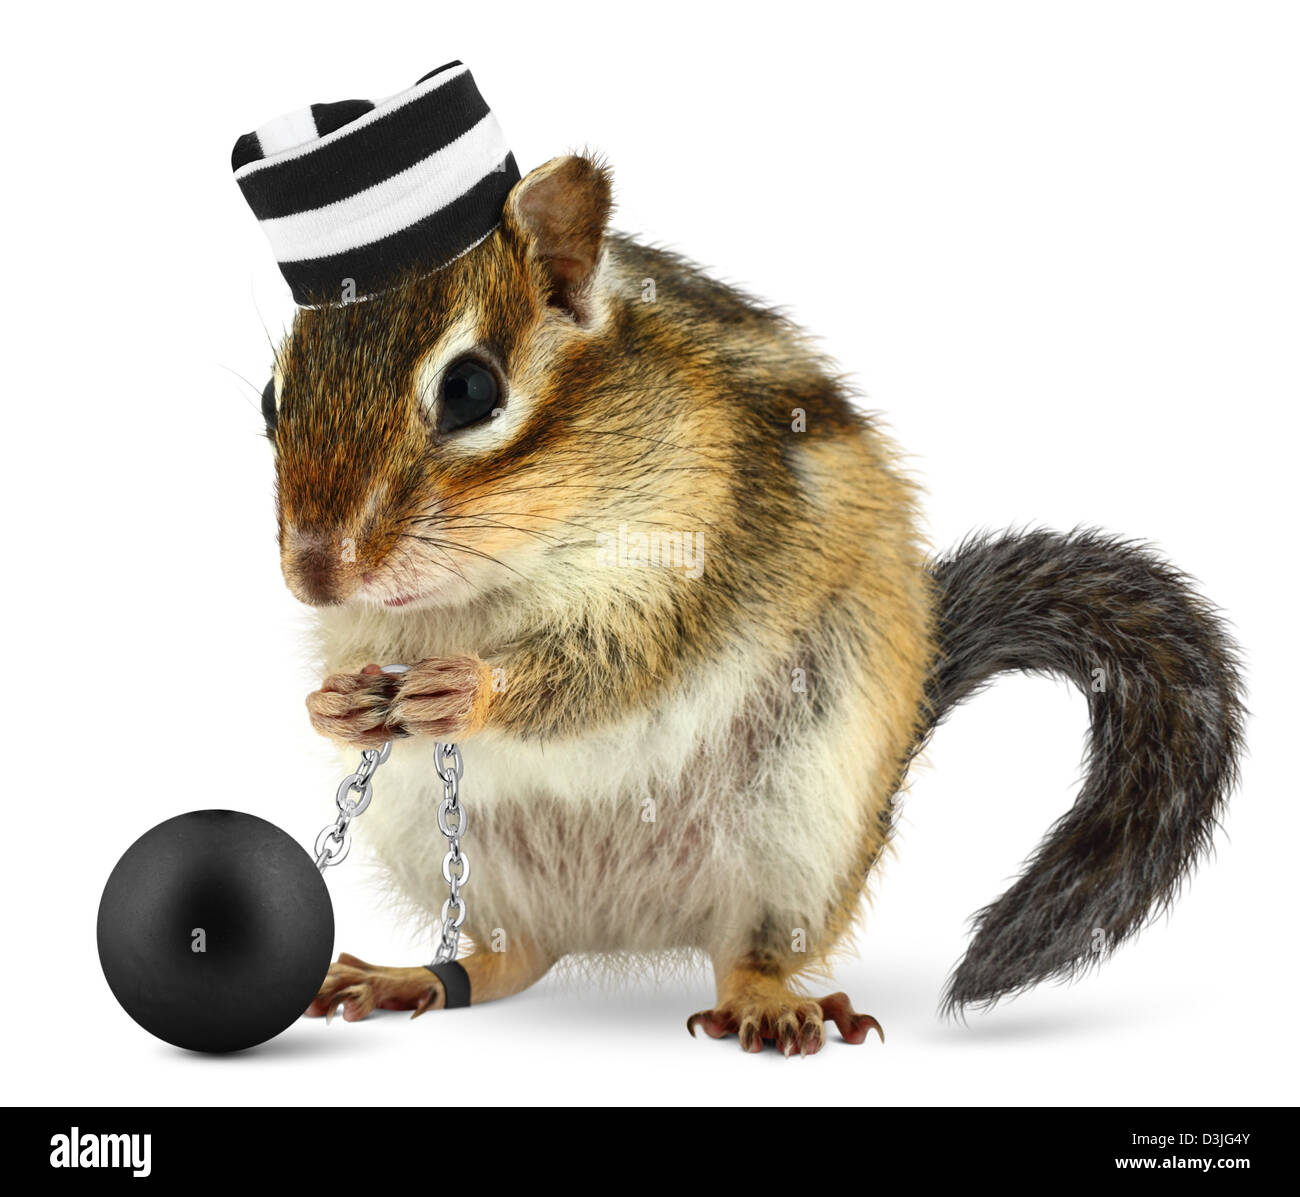 Funny chipmunk criminel en prison, hat isolated on white Banque D'Images